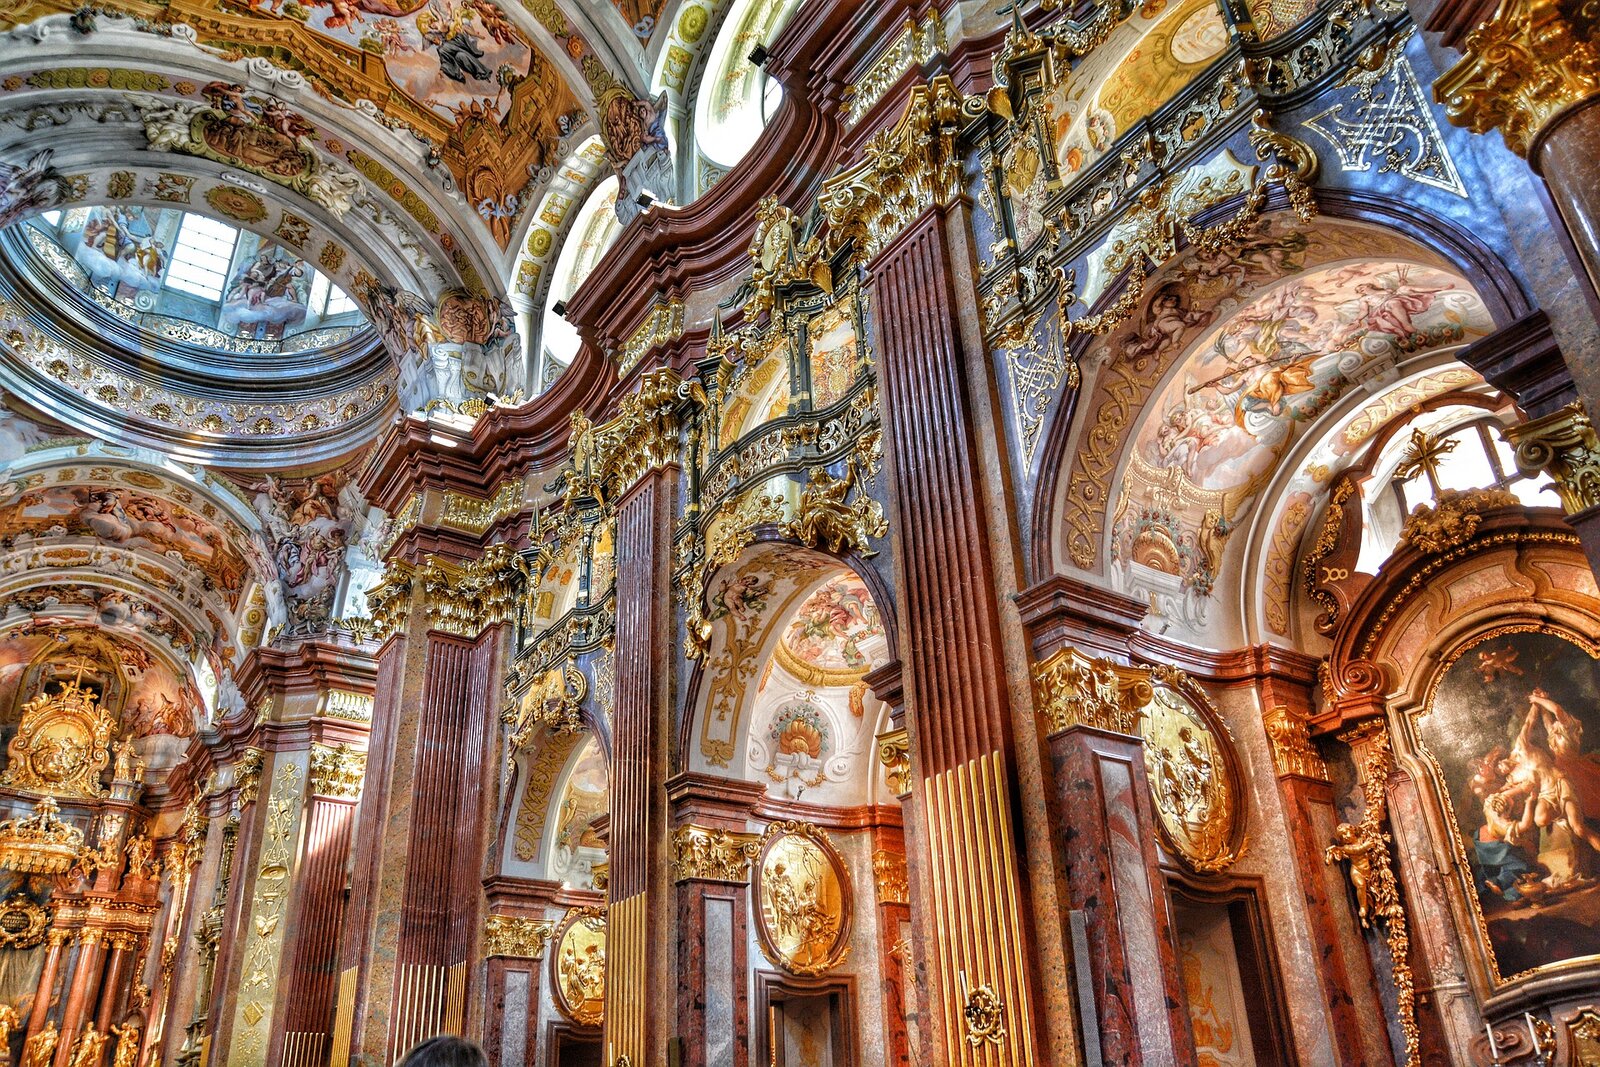 Ilustracja przedstawia wnętrze barokowego kościoła. Znajdują się duże kolumny, których głowice są złote. Na sklepieniach znajdują się kolorowe freski. Przy obrazach ze złotymi ramami i nad łukami są umieszczone złote rzeźby.